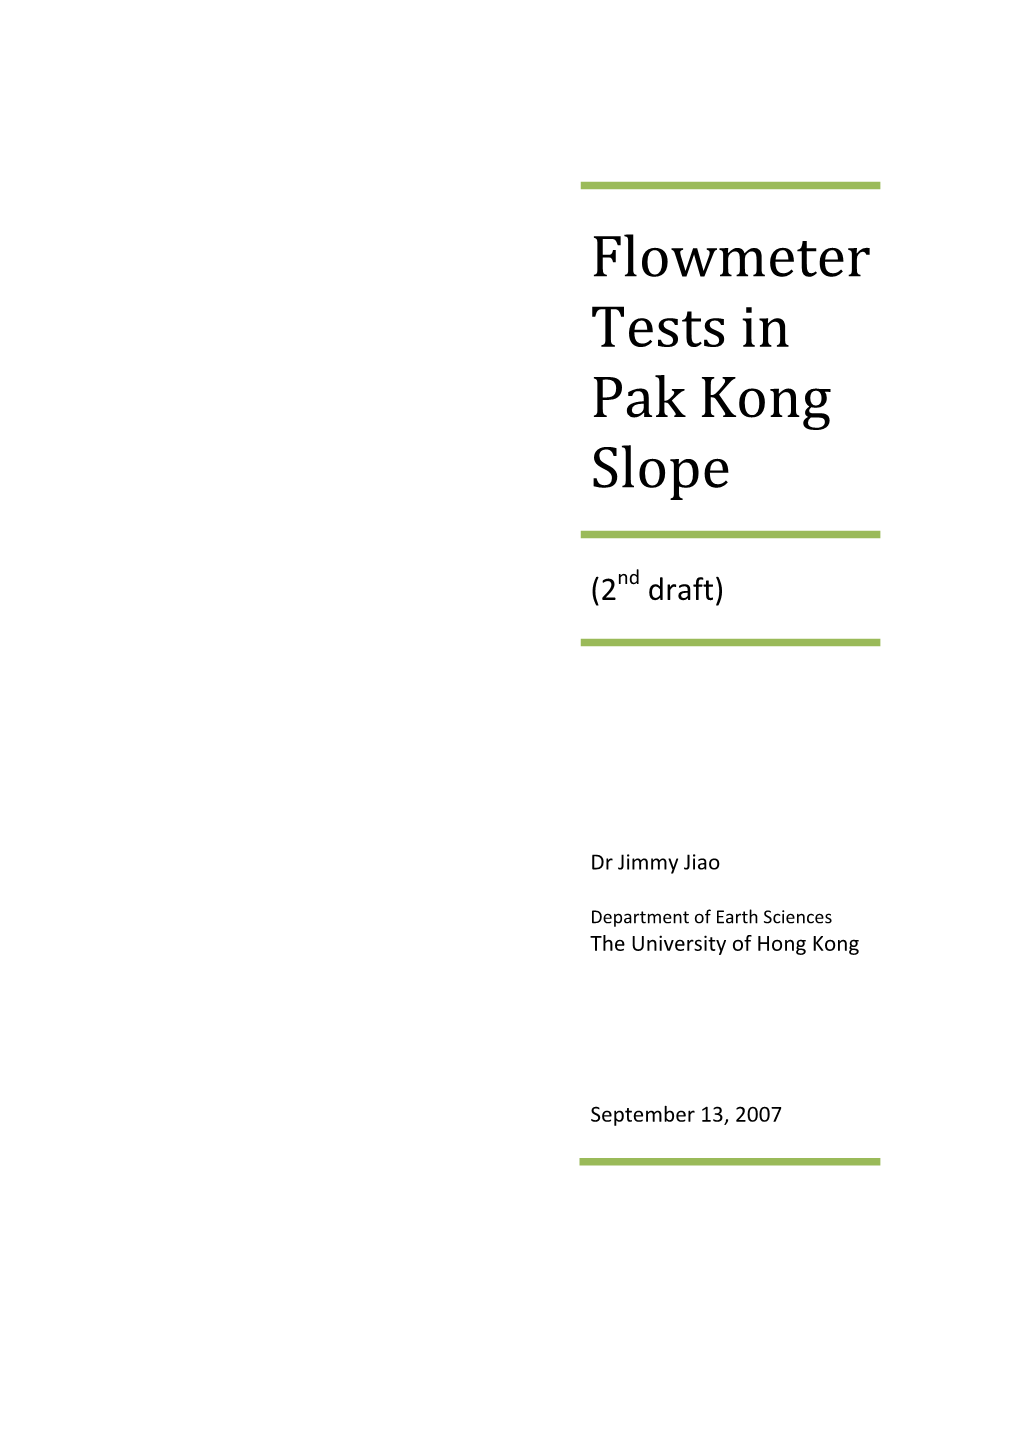 Flowmeter Tests in Pak Kong Slope